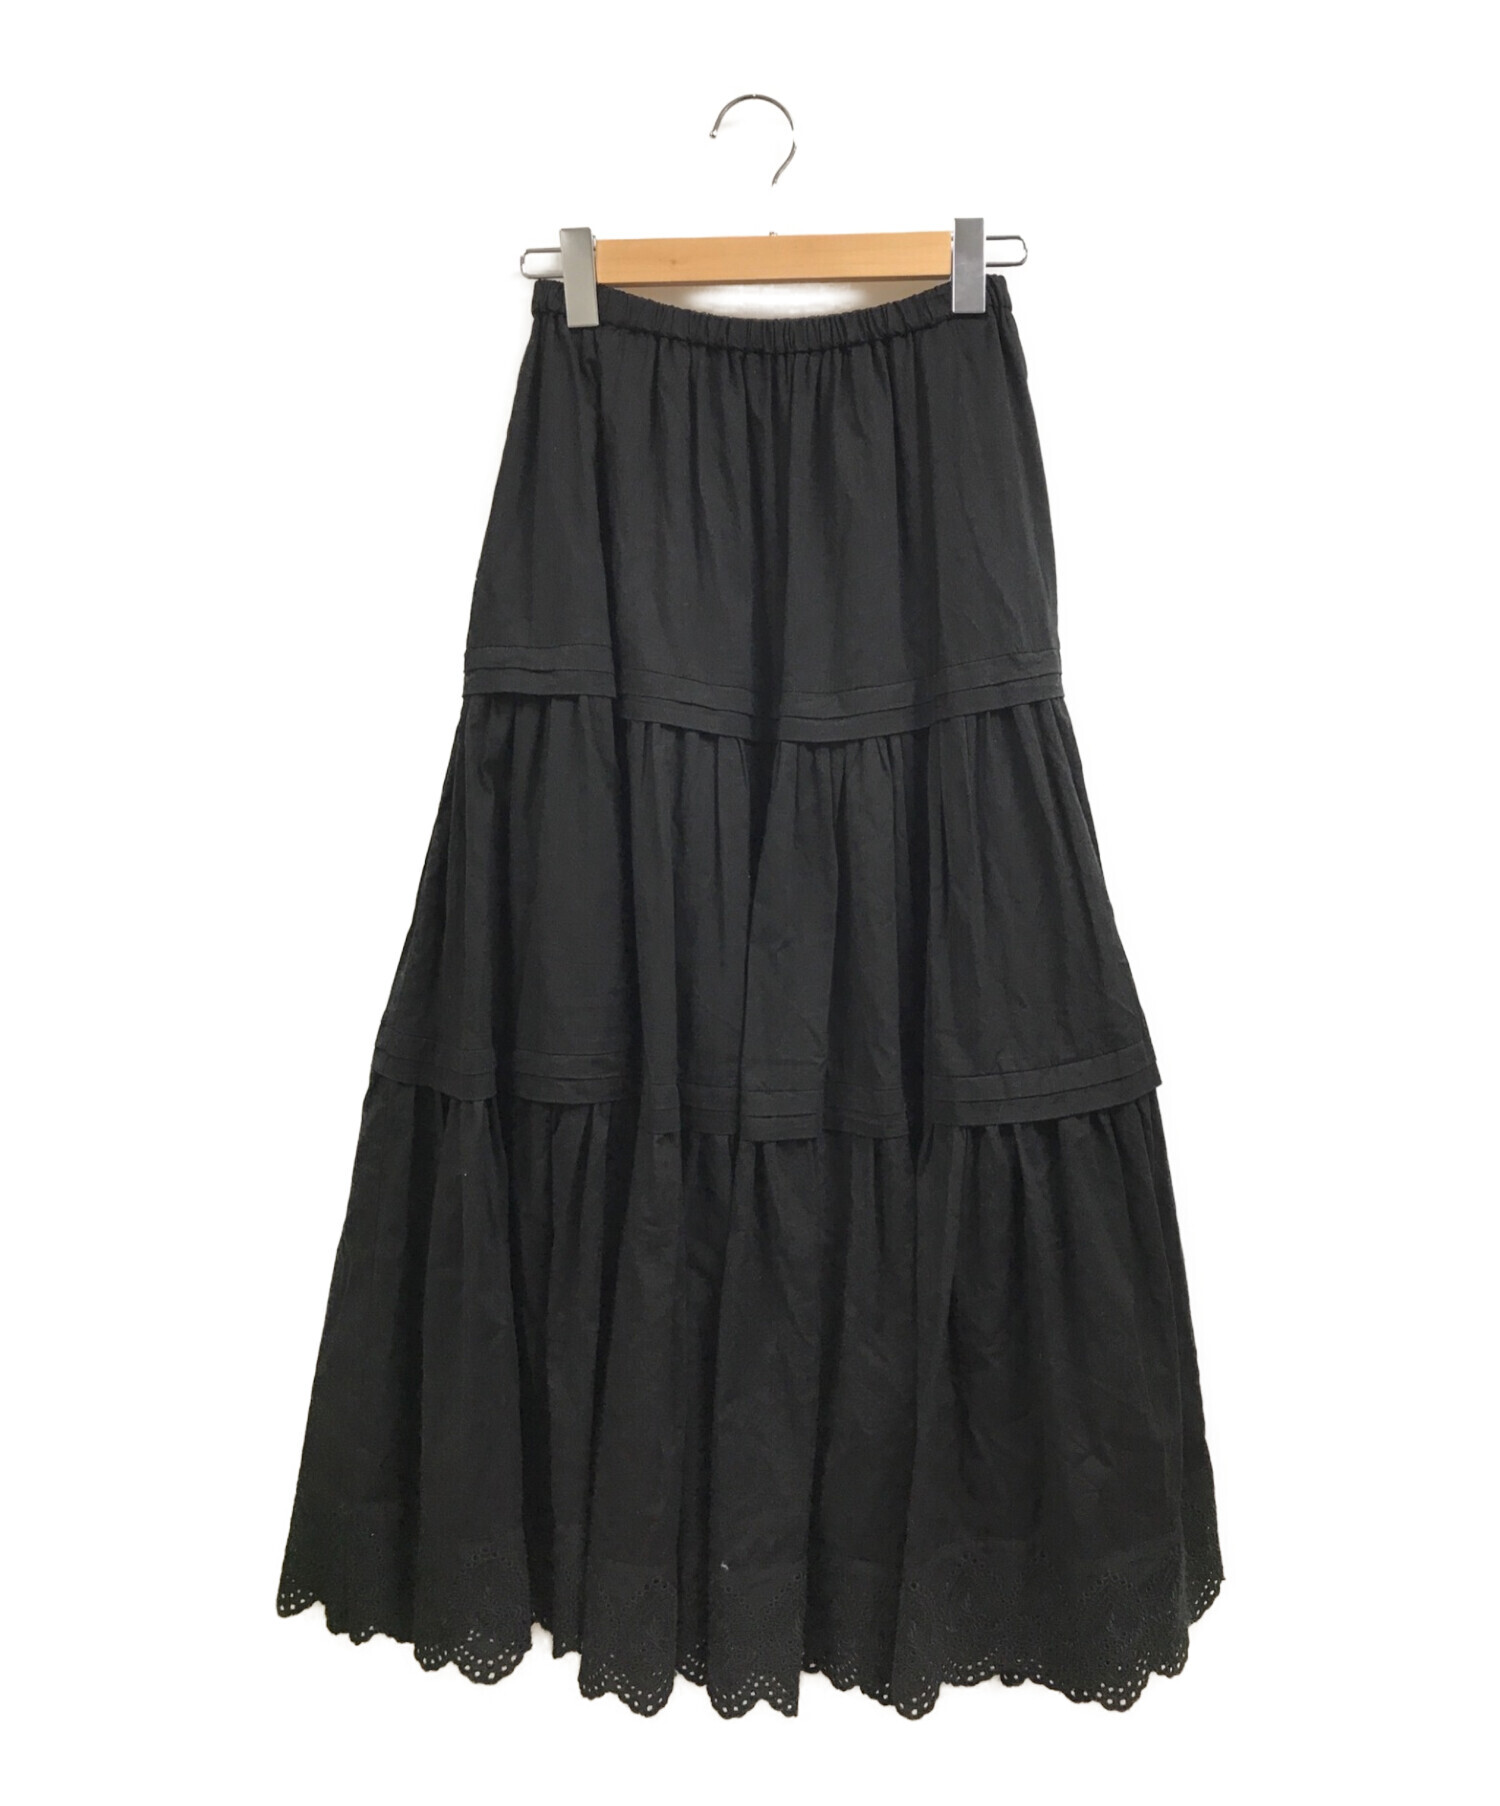 Loungedress (ラウンジドレス) ティアードレーススカート ブラック サイズ:FREE 未使用品